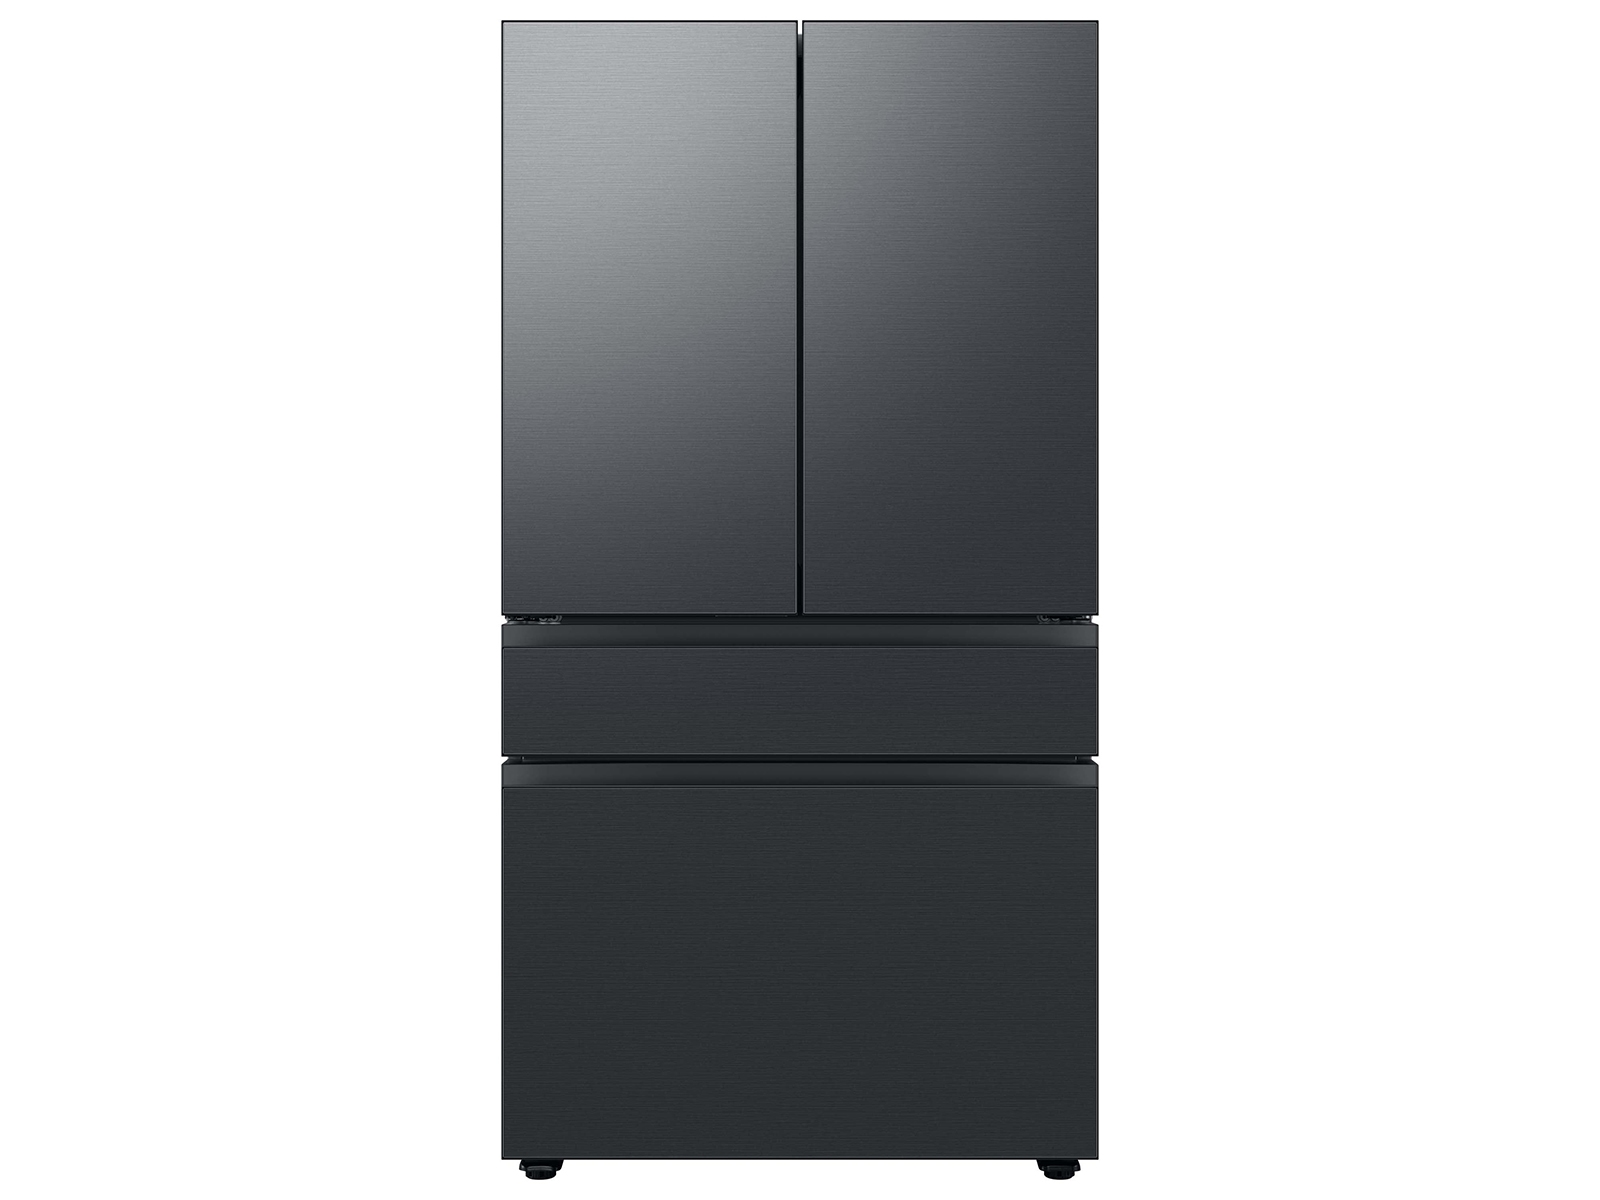 Bespoke 4-Door French Door Refrigerator (29 cu. ft.) with Customizable Door Panel Colors and Beverage Center&trade; in Matte Black Steel